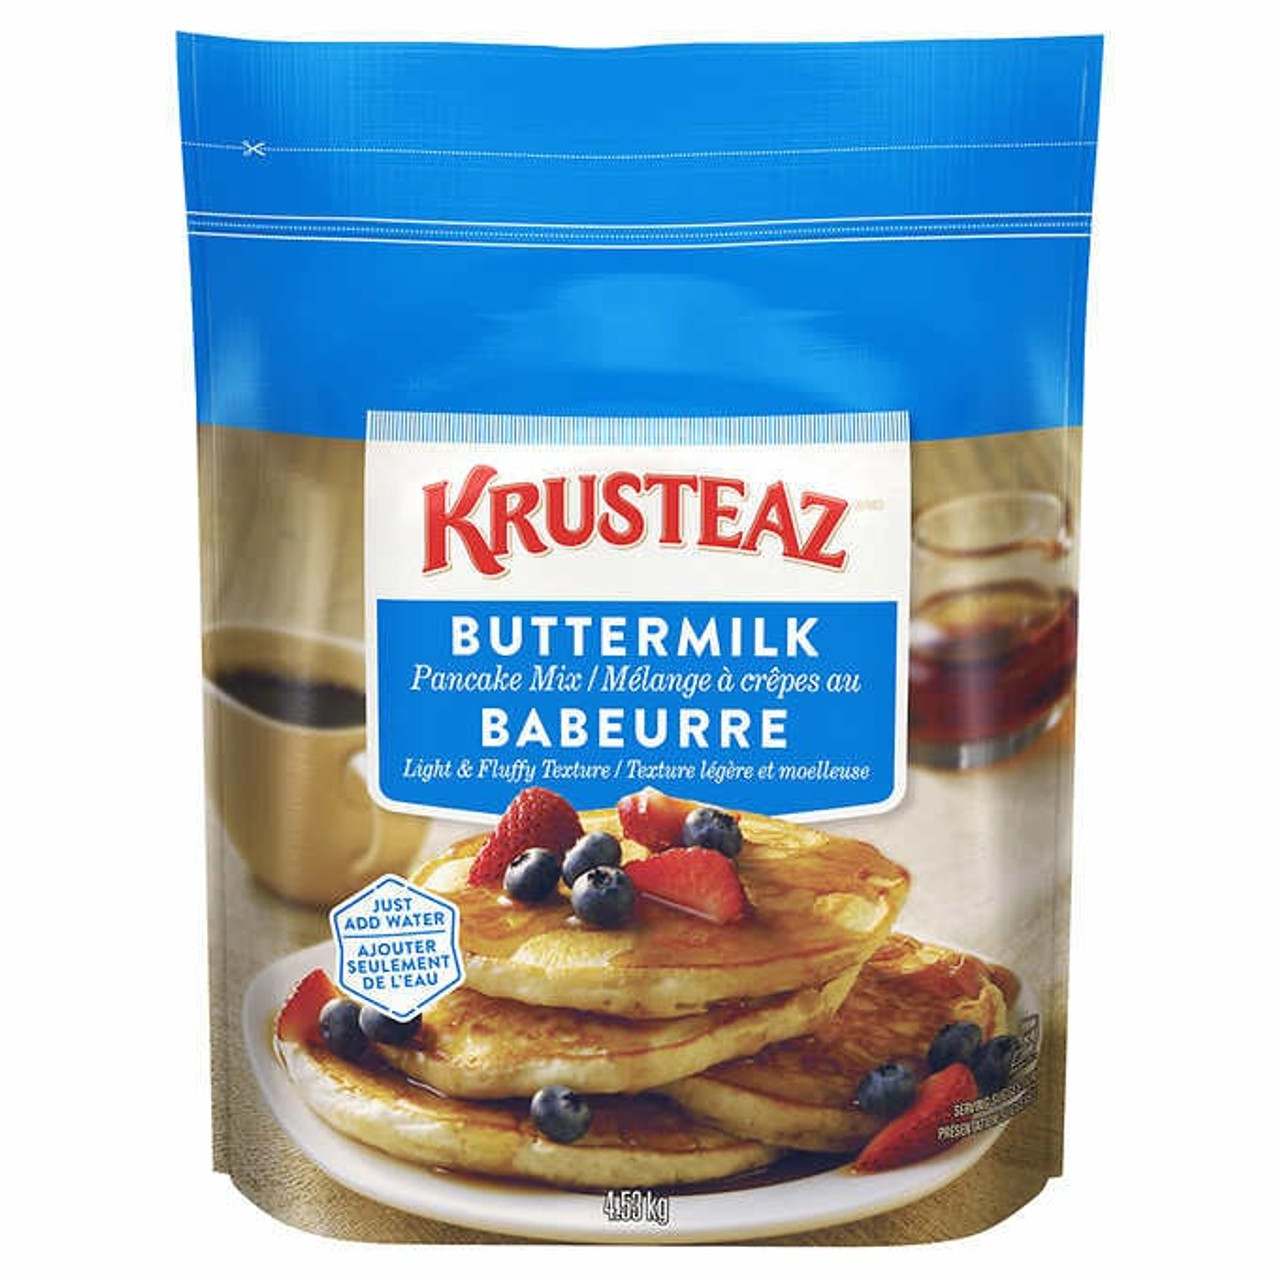 Krusteaz Pancake Mix, Buttermilk, 4.53 kg- Chicken Pieces